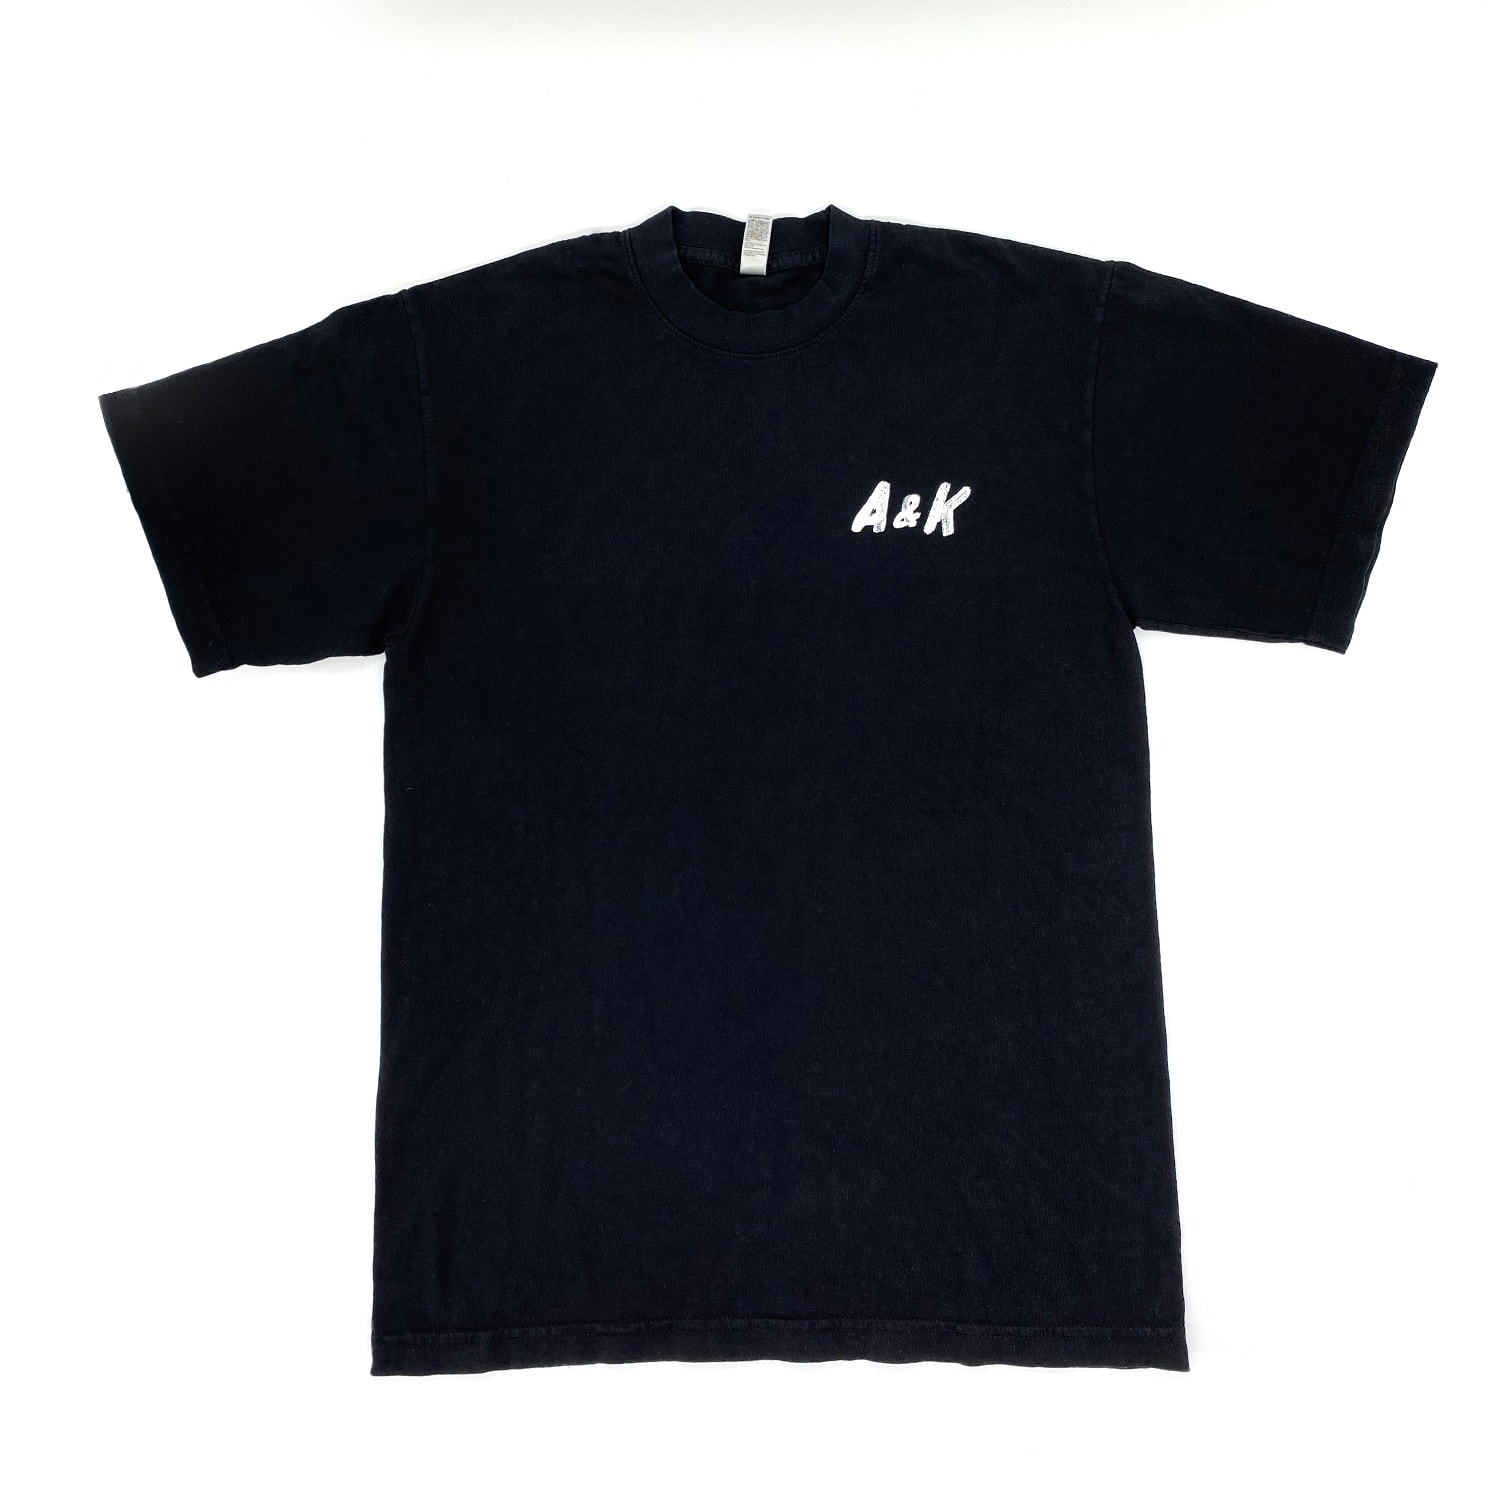 A&K T-shirt